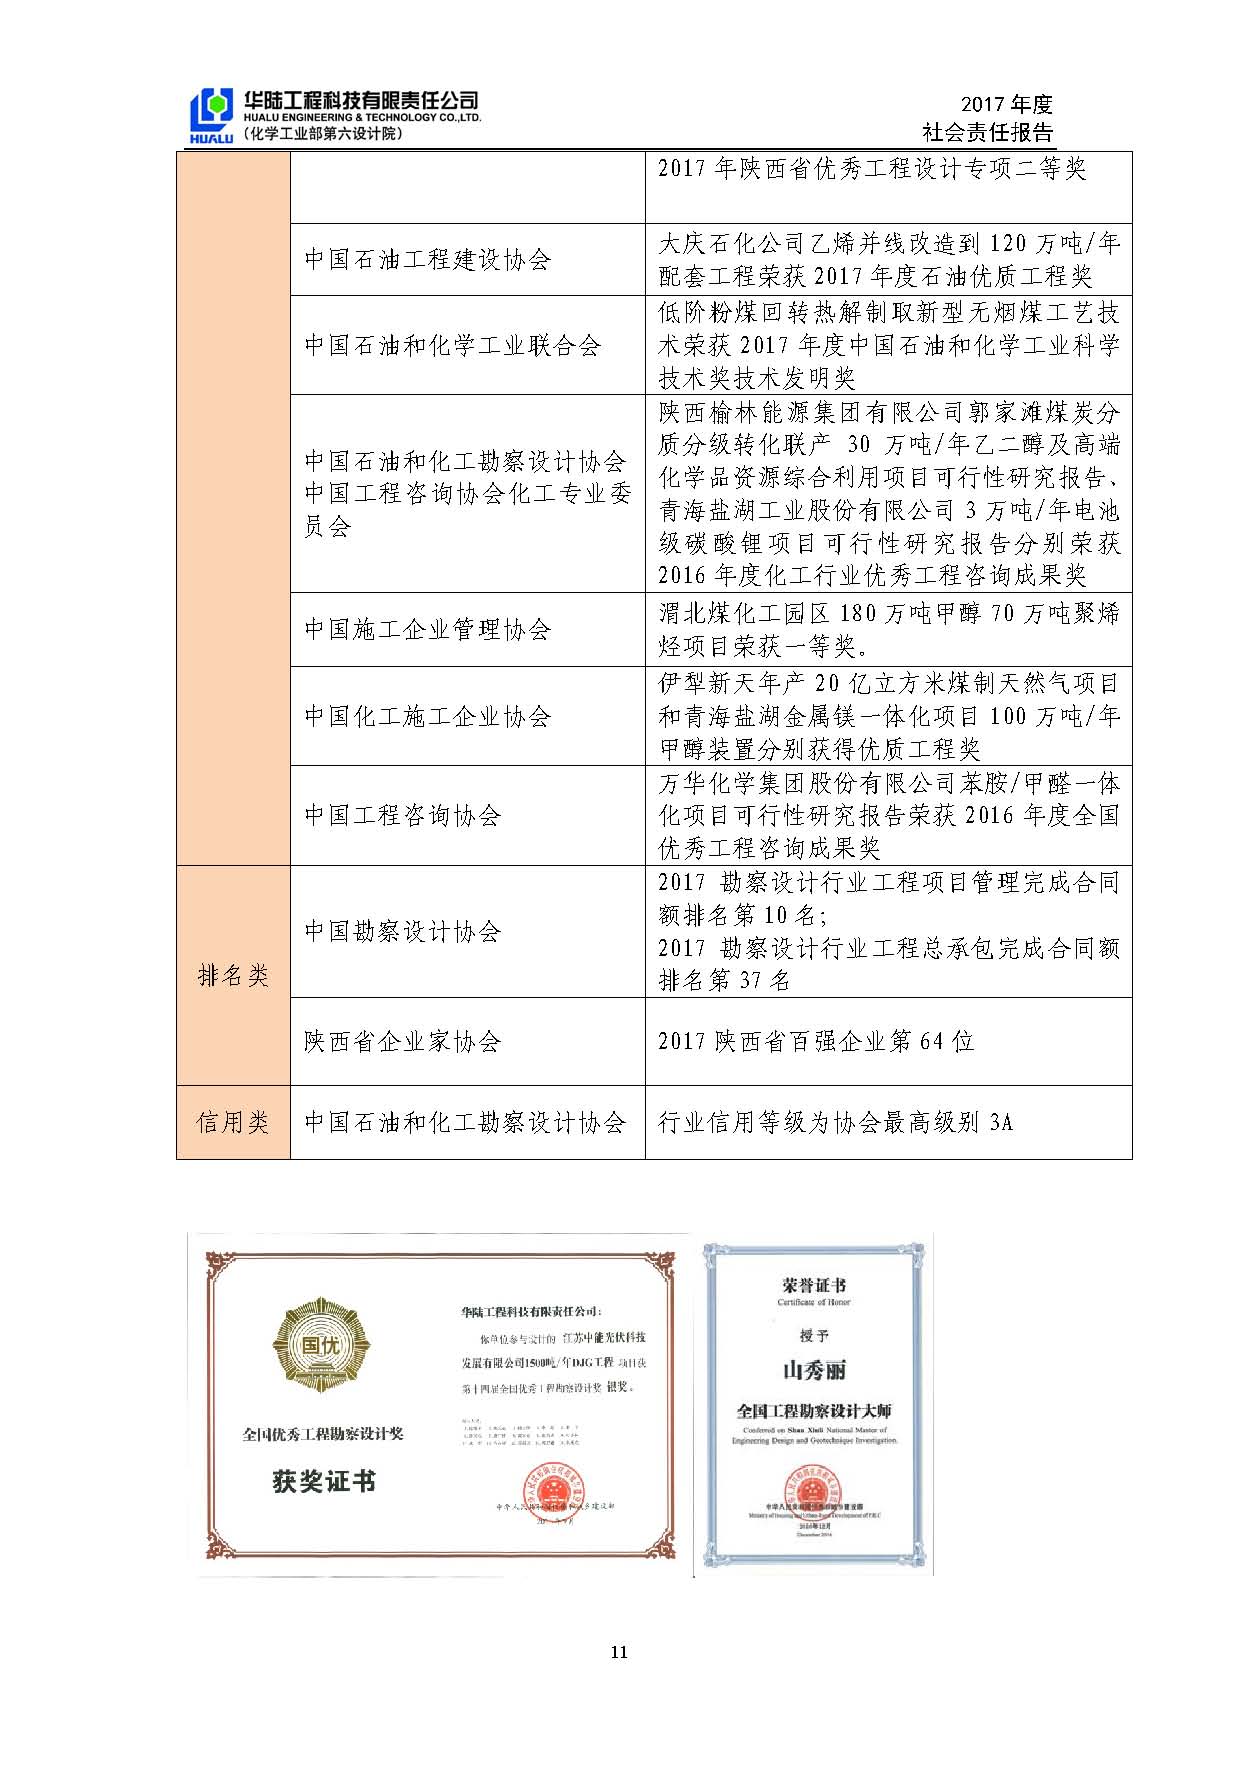 华陆工程科技有限责任公司2017年社会责任报告_页面_12.jpg